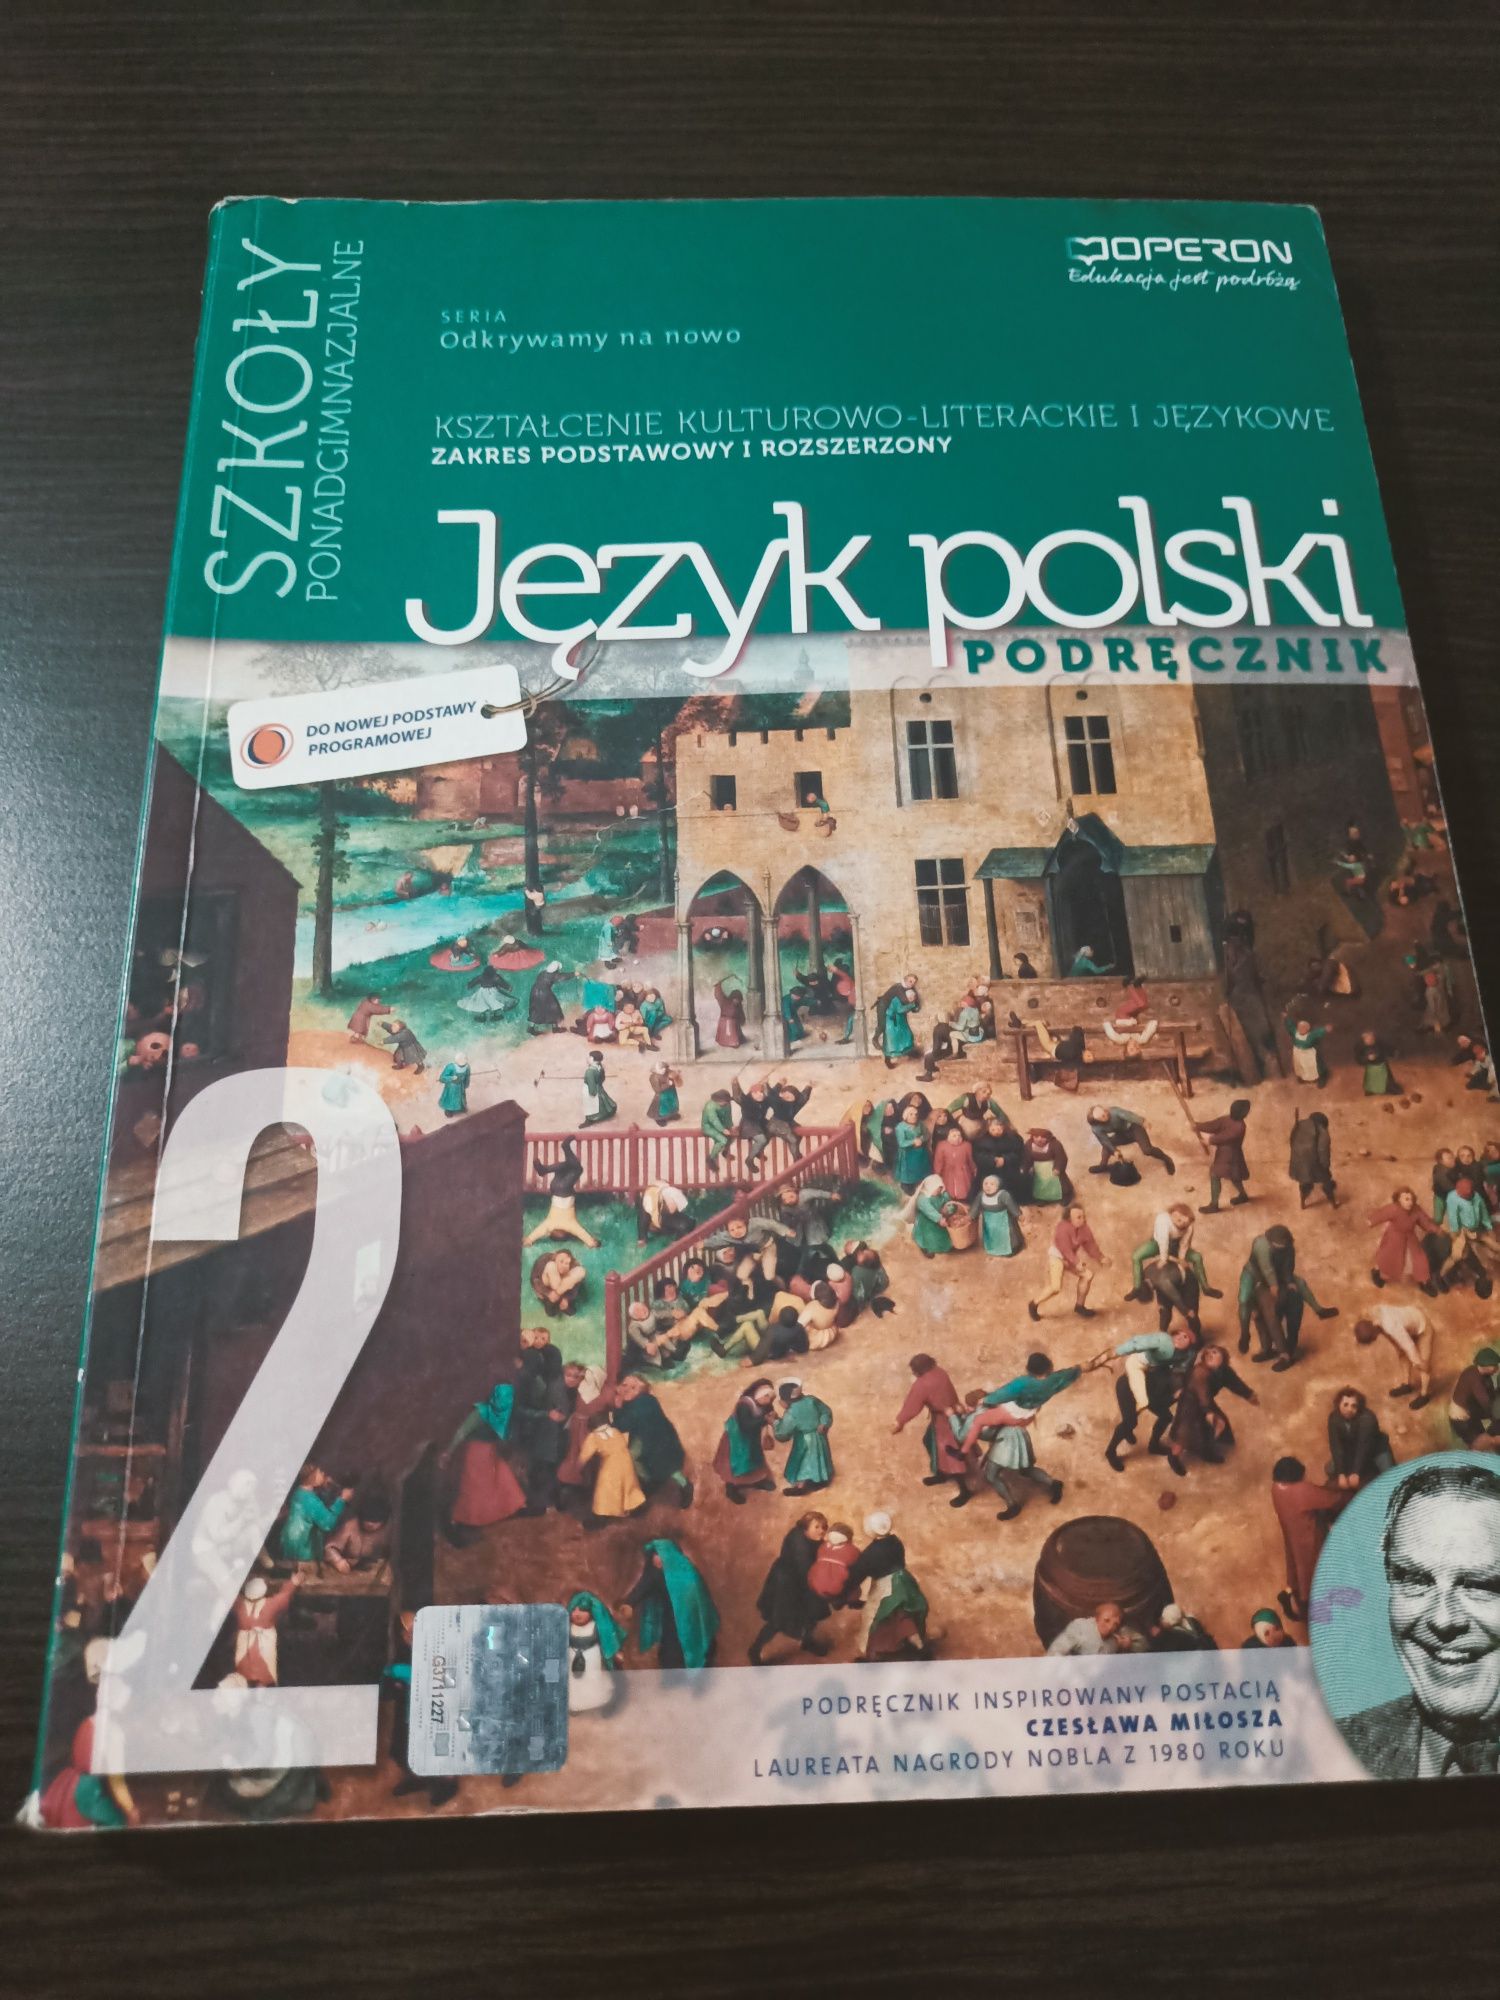 Książki,podręczniki do języka polskiego